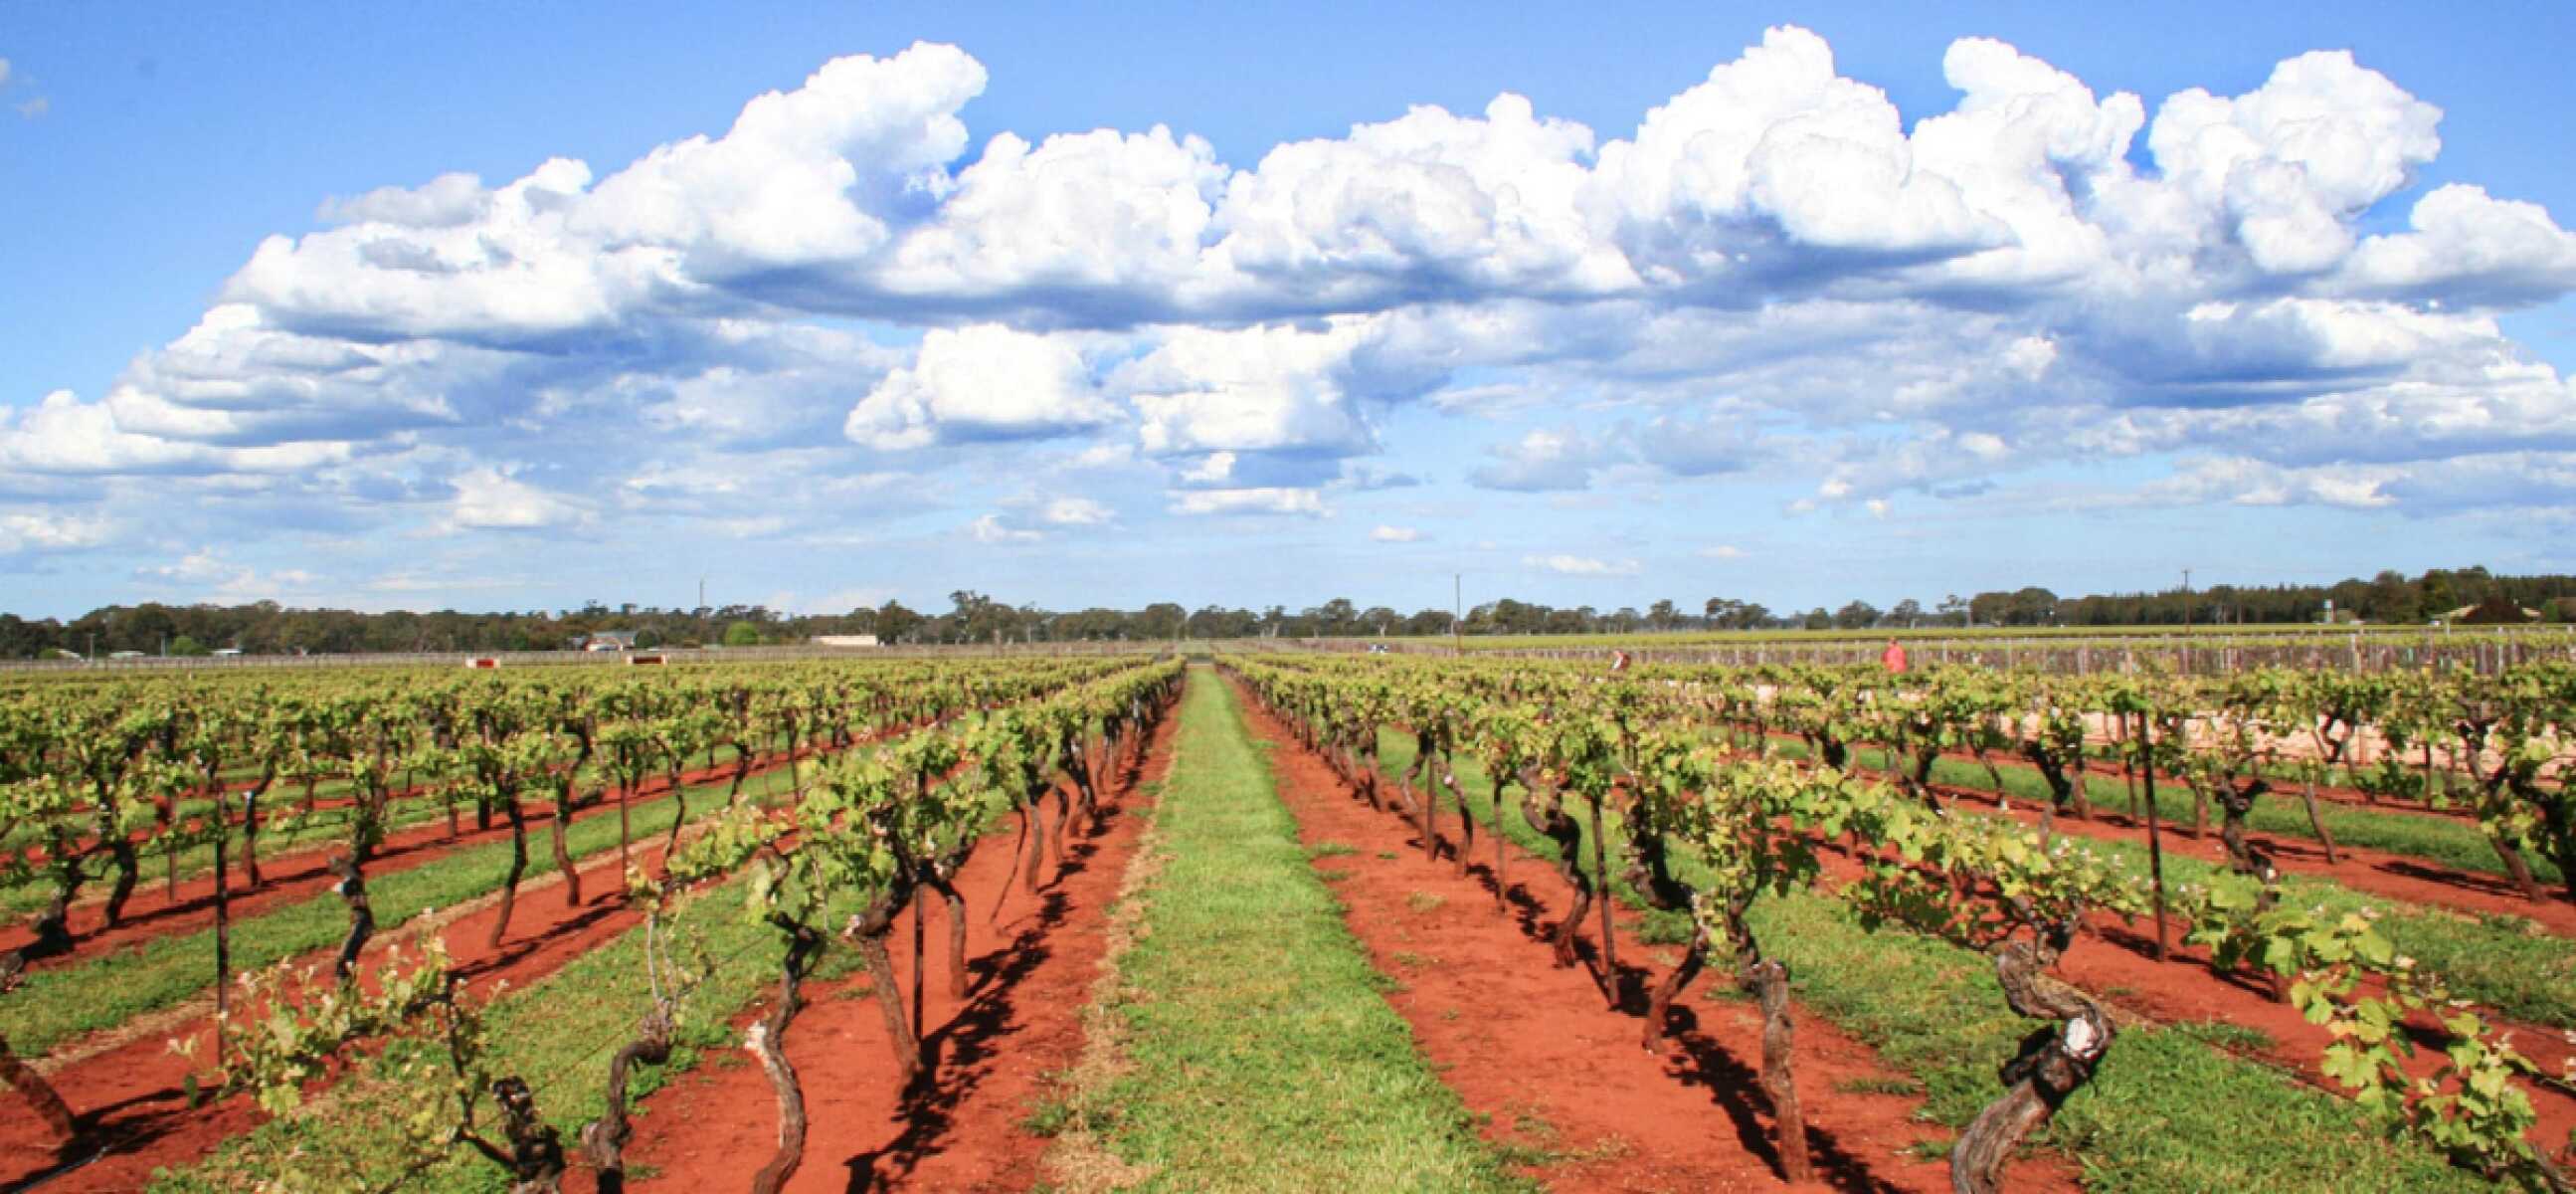 Το χαρακτηριστικό κόκκινο χώμα ("terra rossa") των αμπελώνων στην Coonawarra της Νότιας Αυστραλίας.